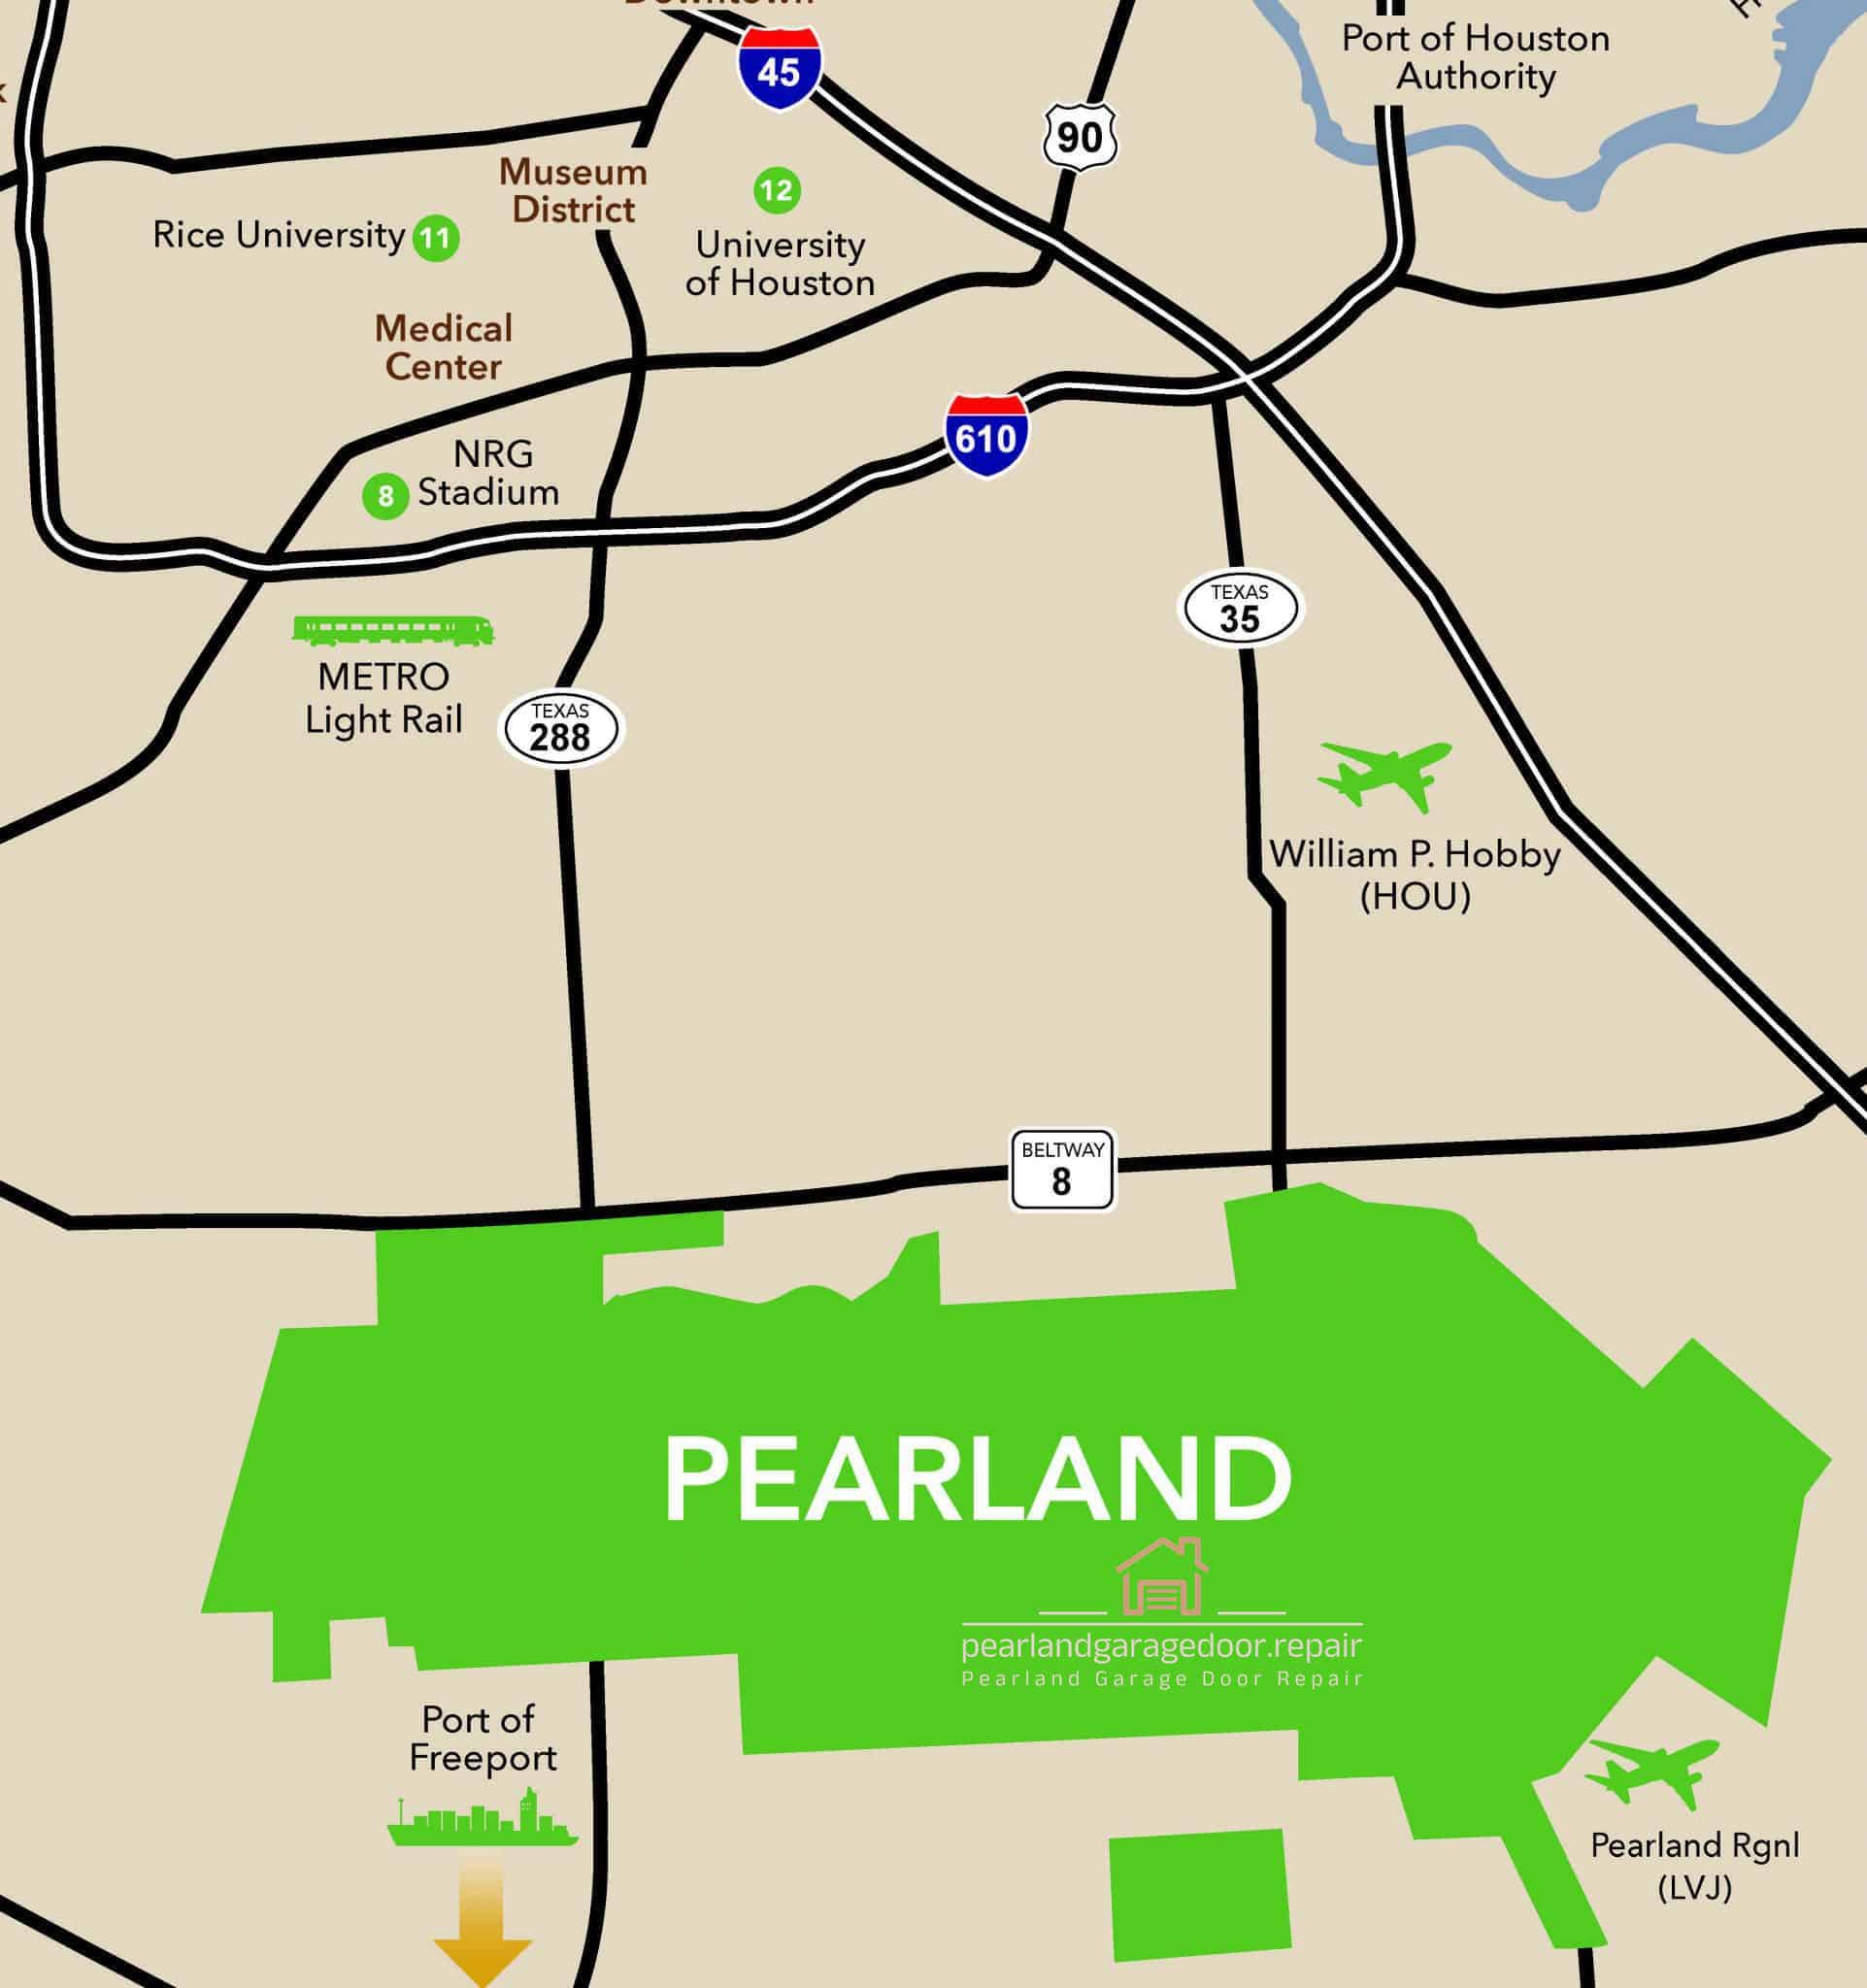 Expert Garage Door repair & service in Pearland, Texas